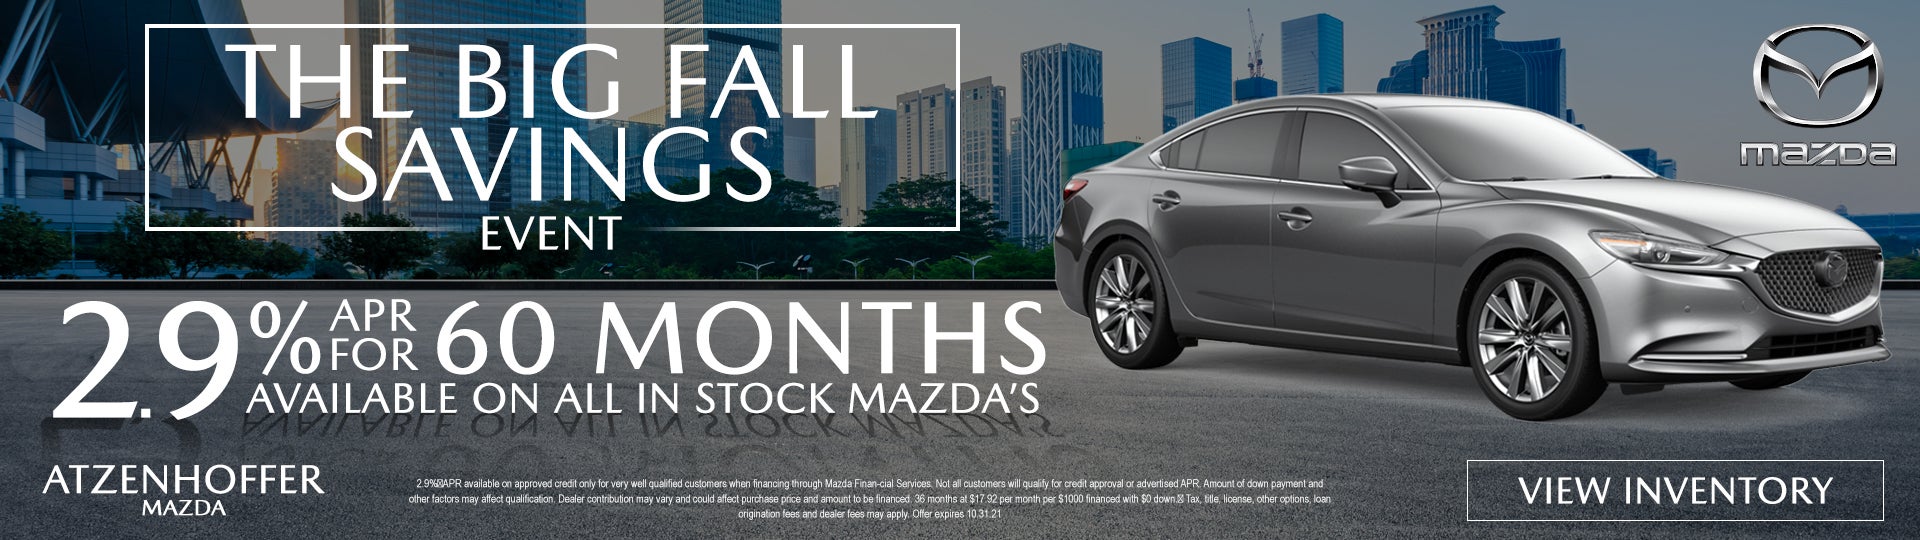 2.9% APR for 60 Months at Atzenhoffer Mazda in Victoria, TX